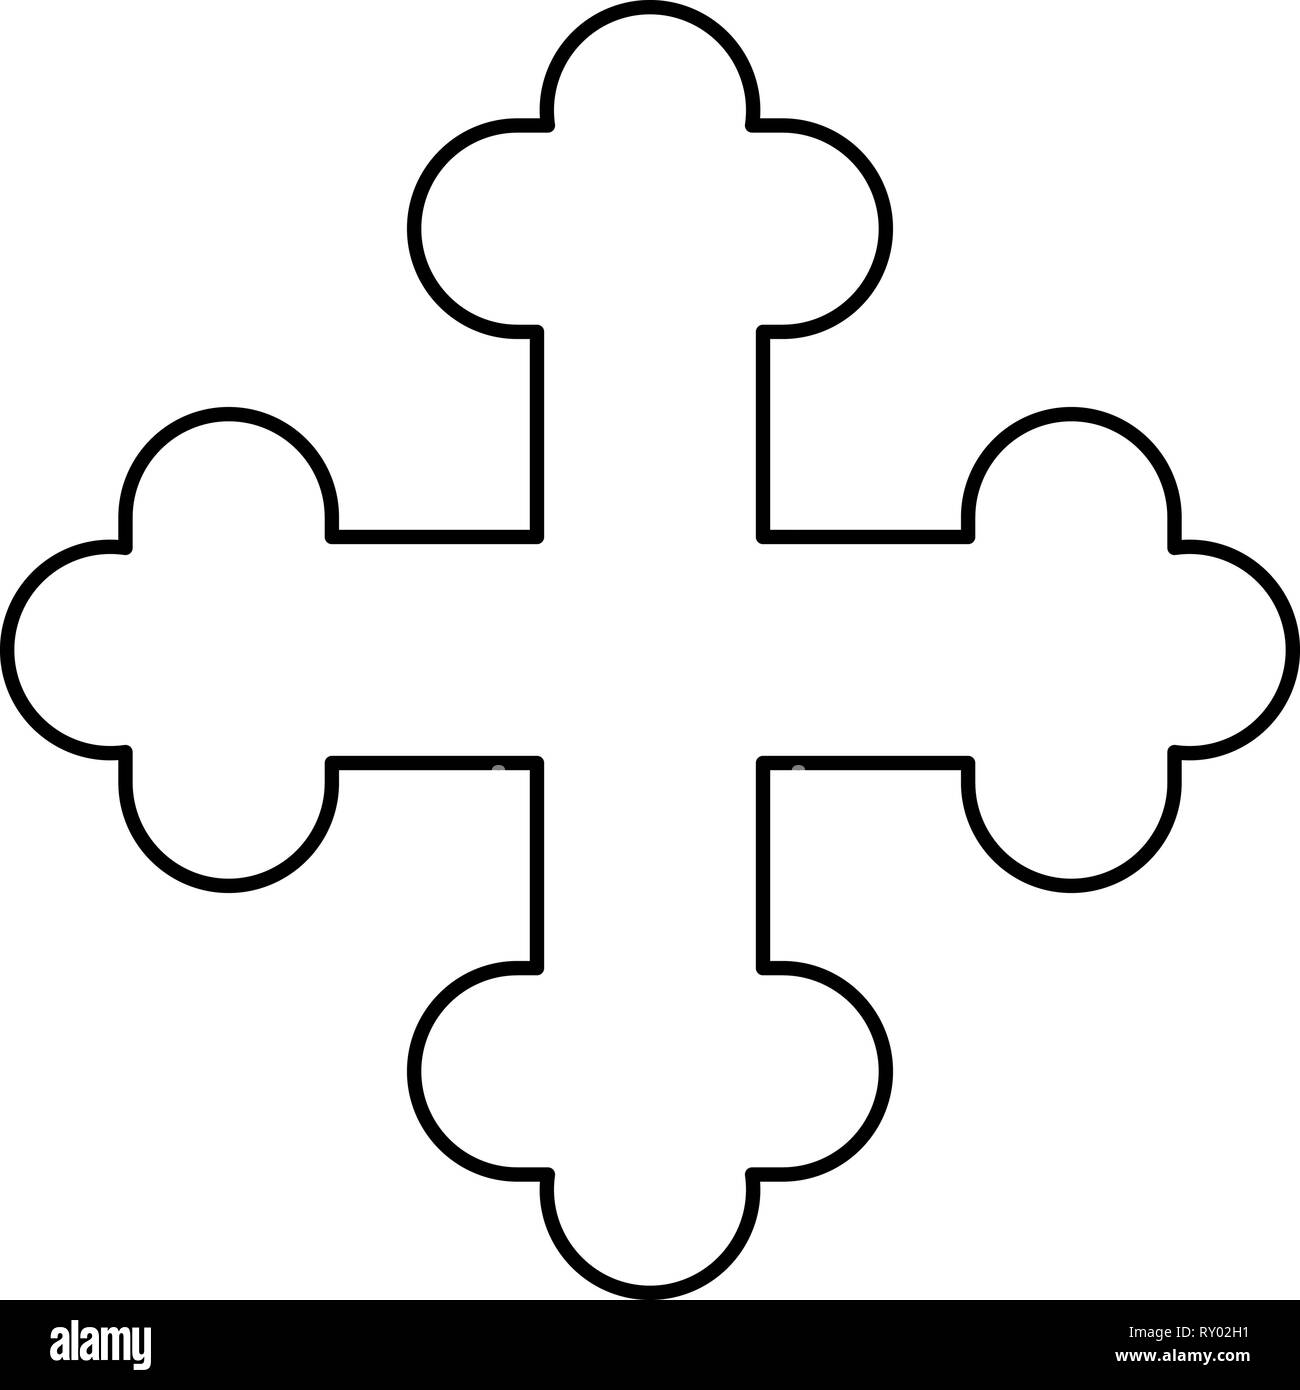 Cross trefoil shamrock Cross monogram Religious cross icon black color outline vector illustration flat style image Stock Vector